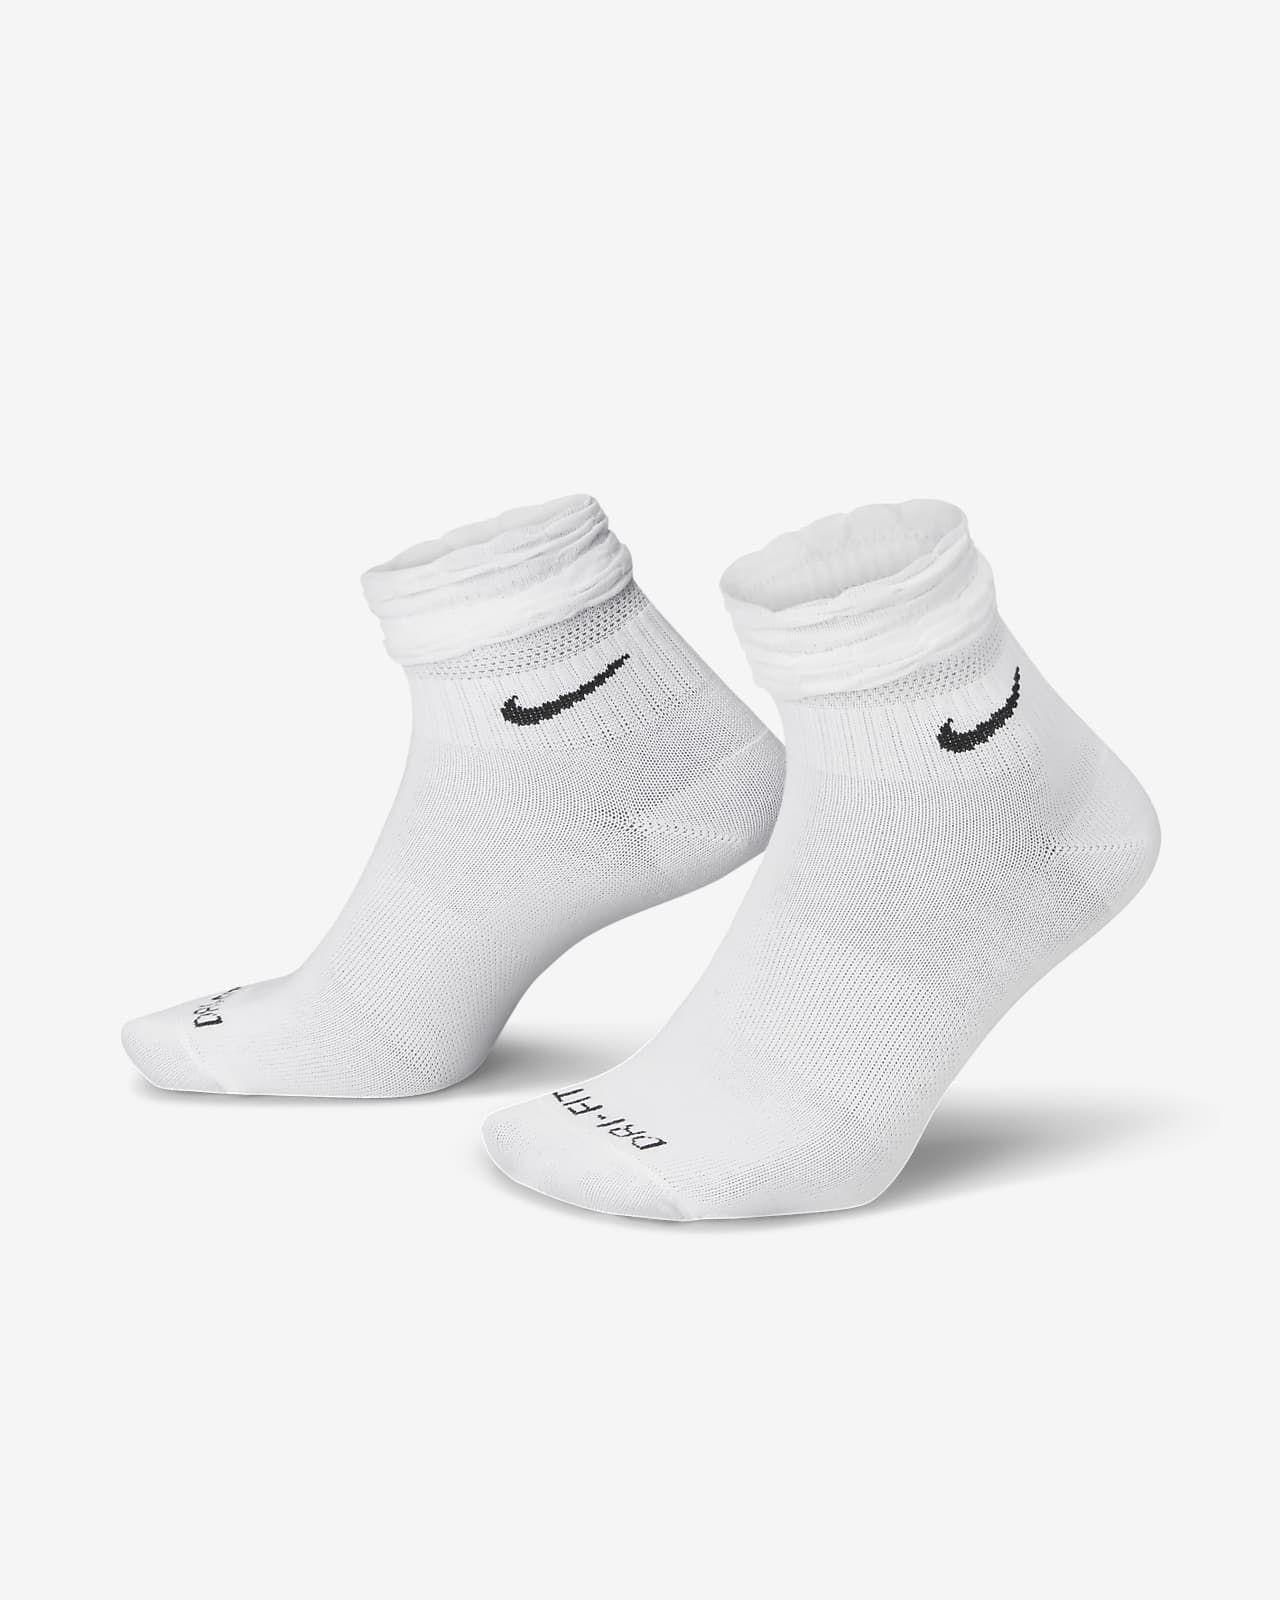 Training Ankle Socks | Nike (US)